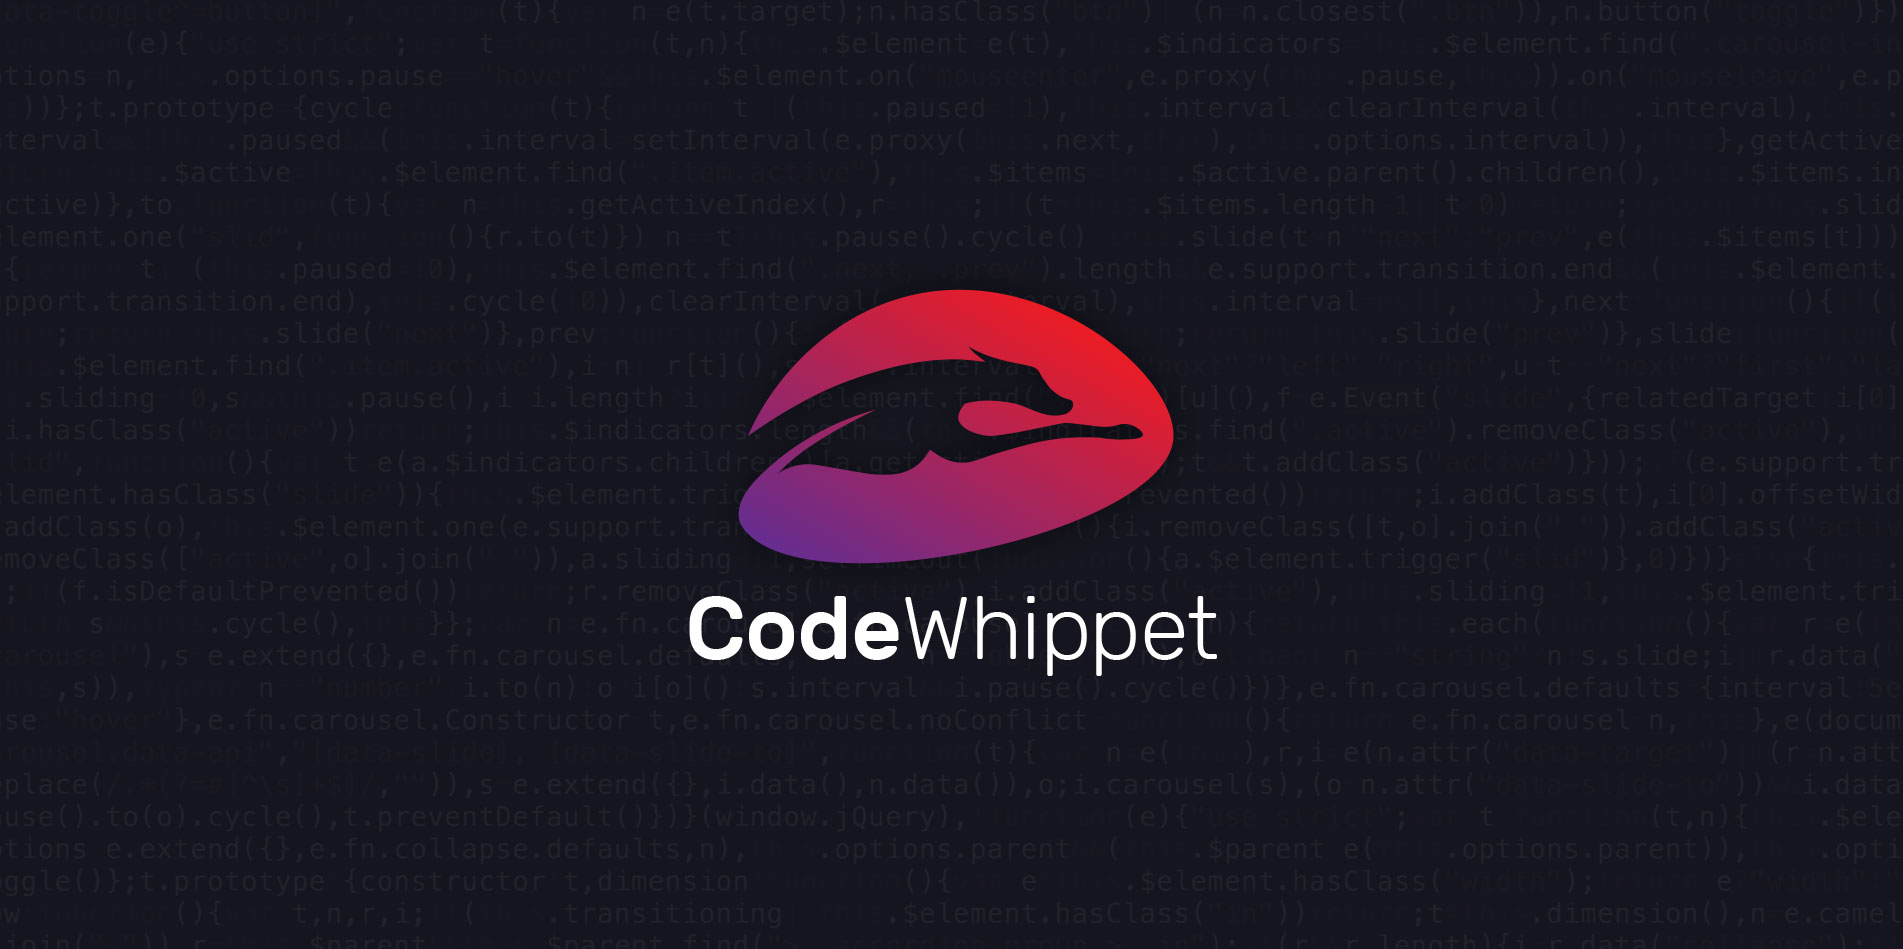 Code Whippet  Design